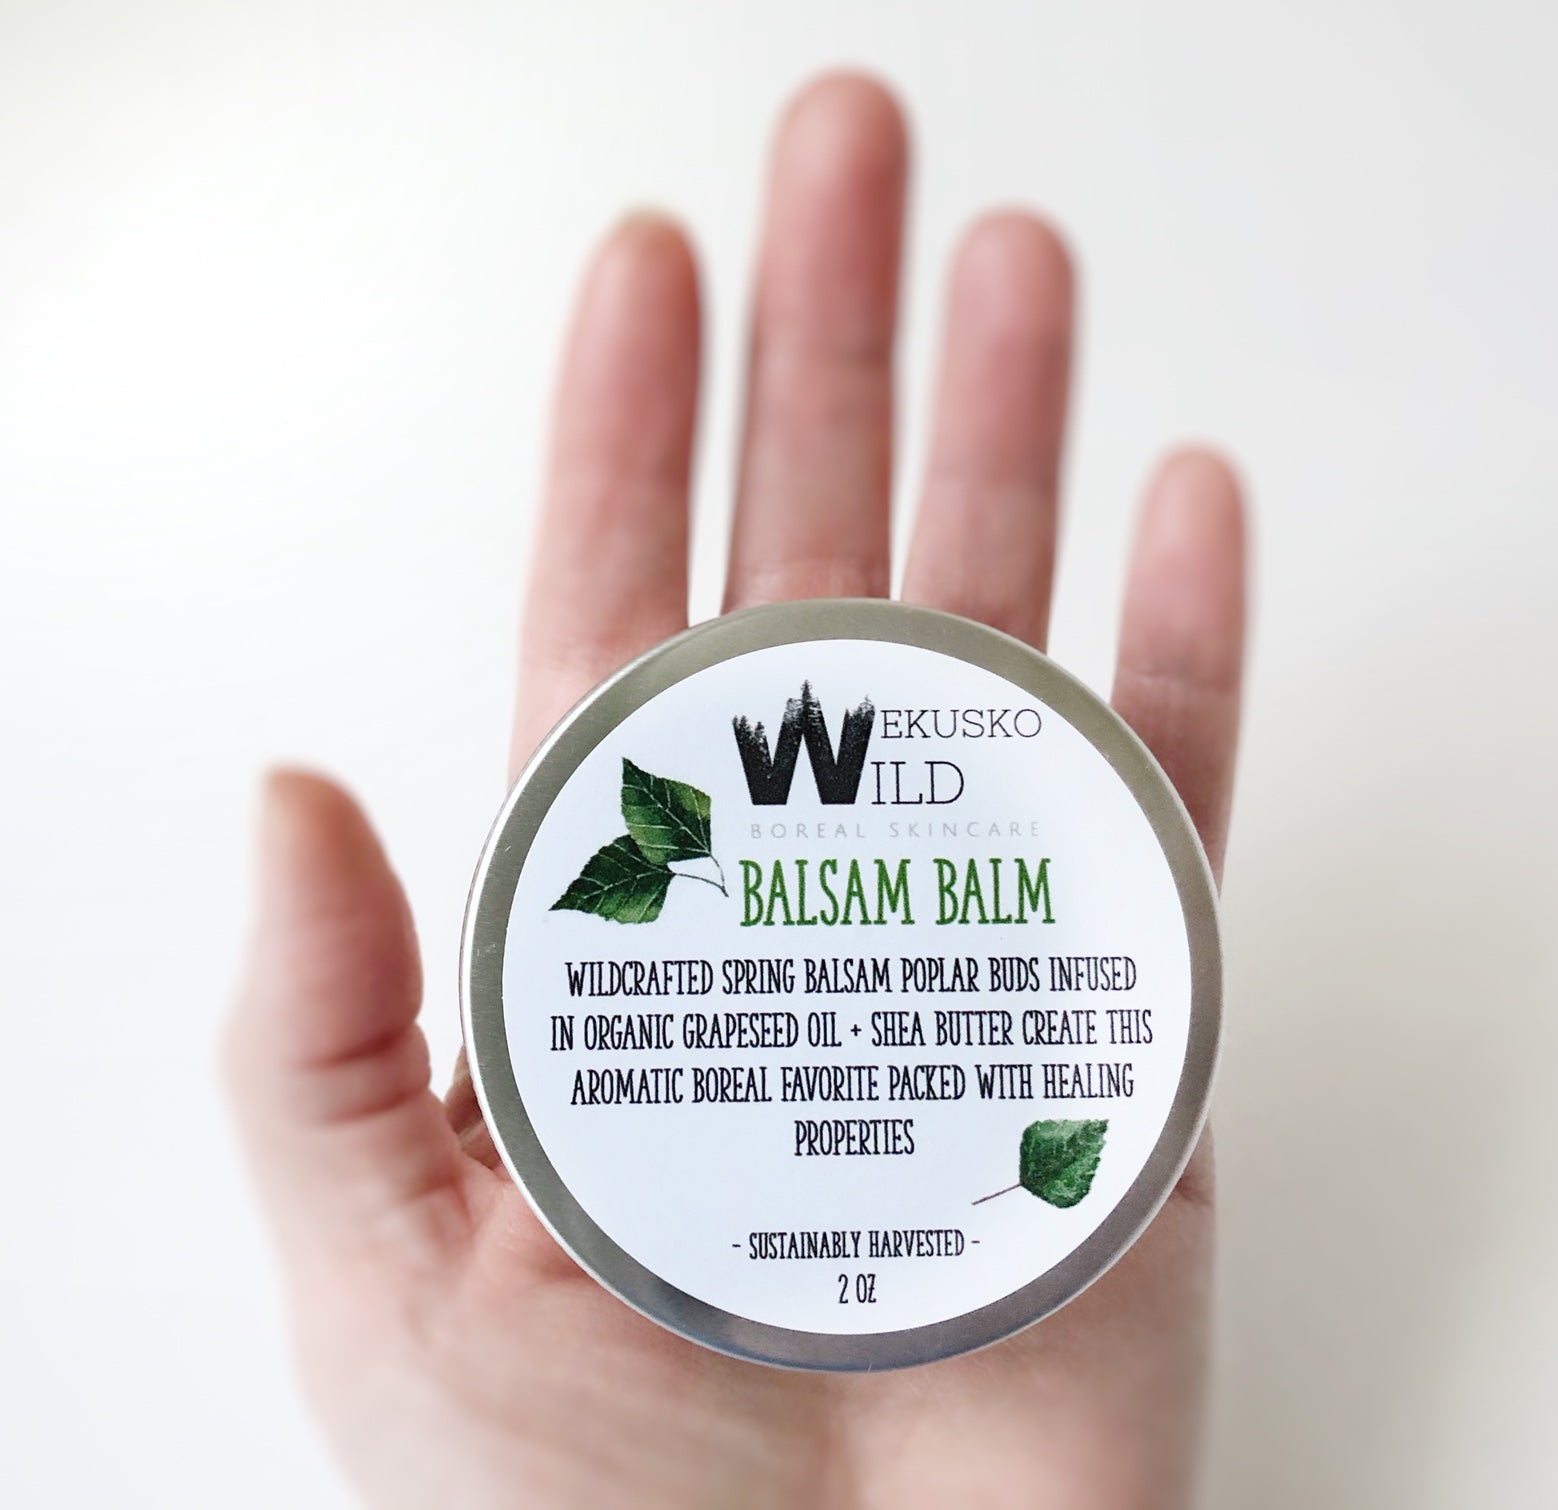 balsam balm - WEKUSKO WILD Boreal Skincare